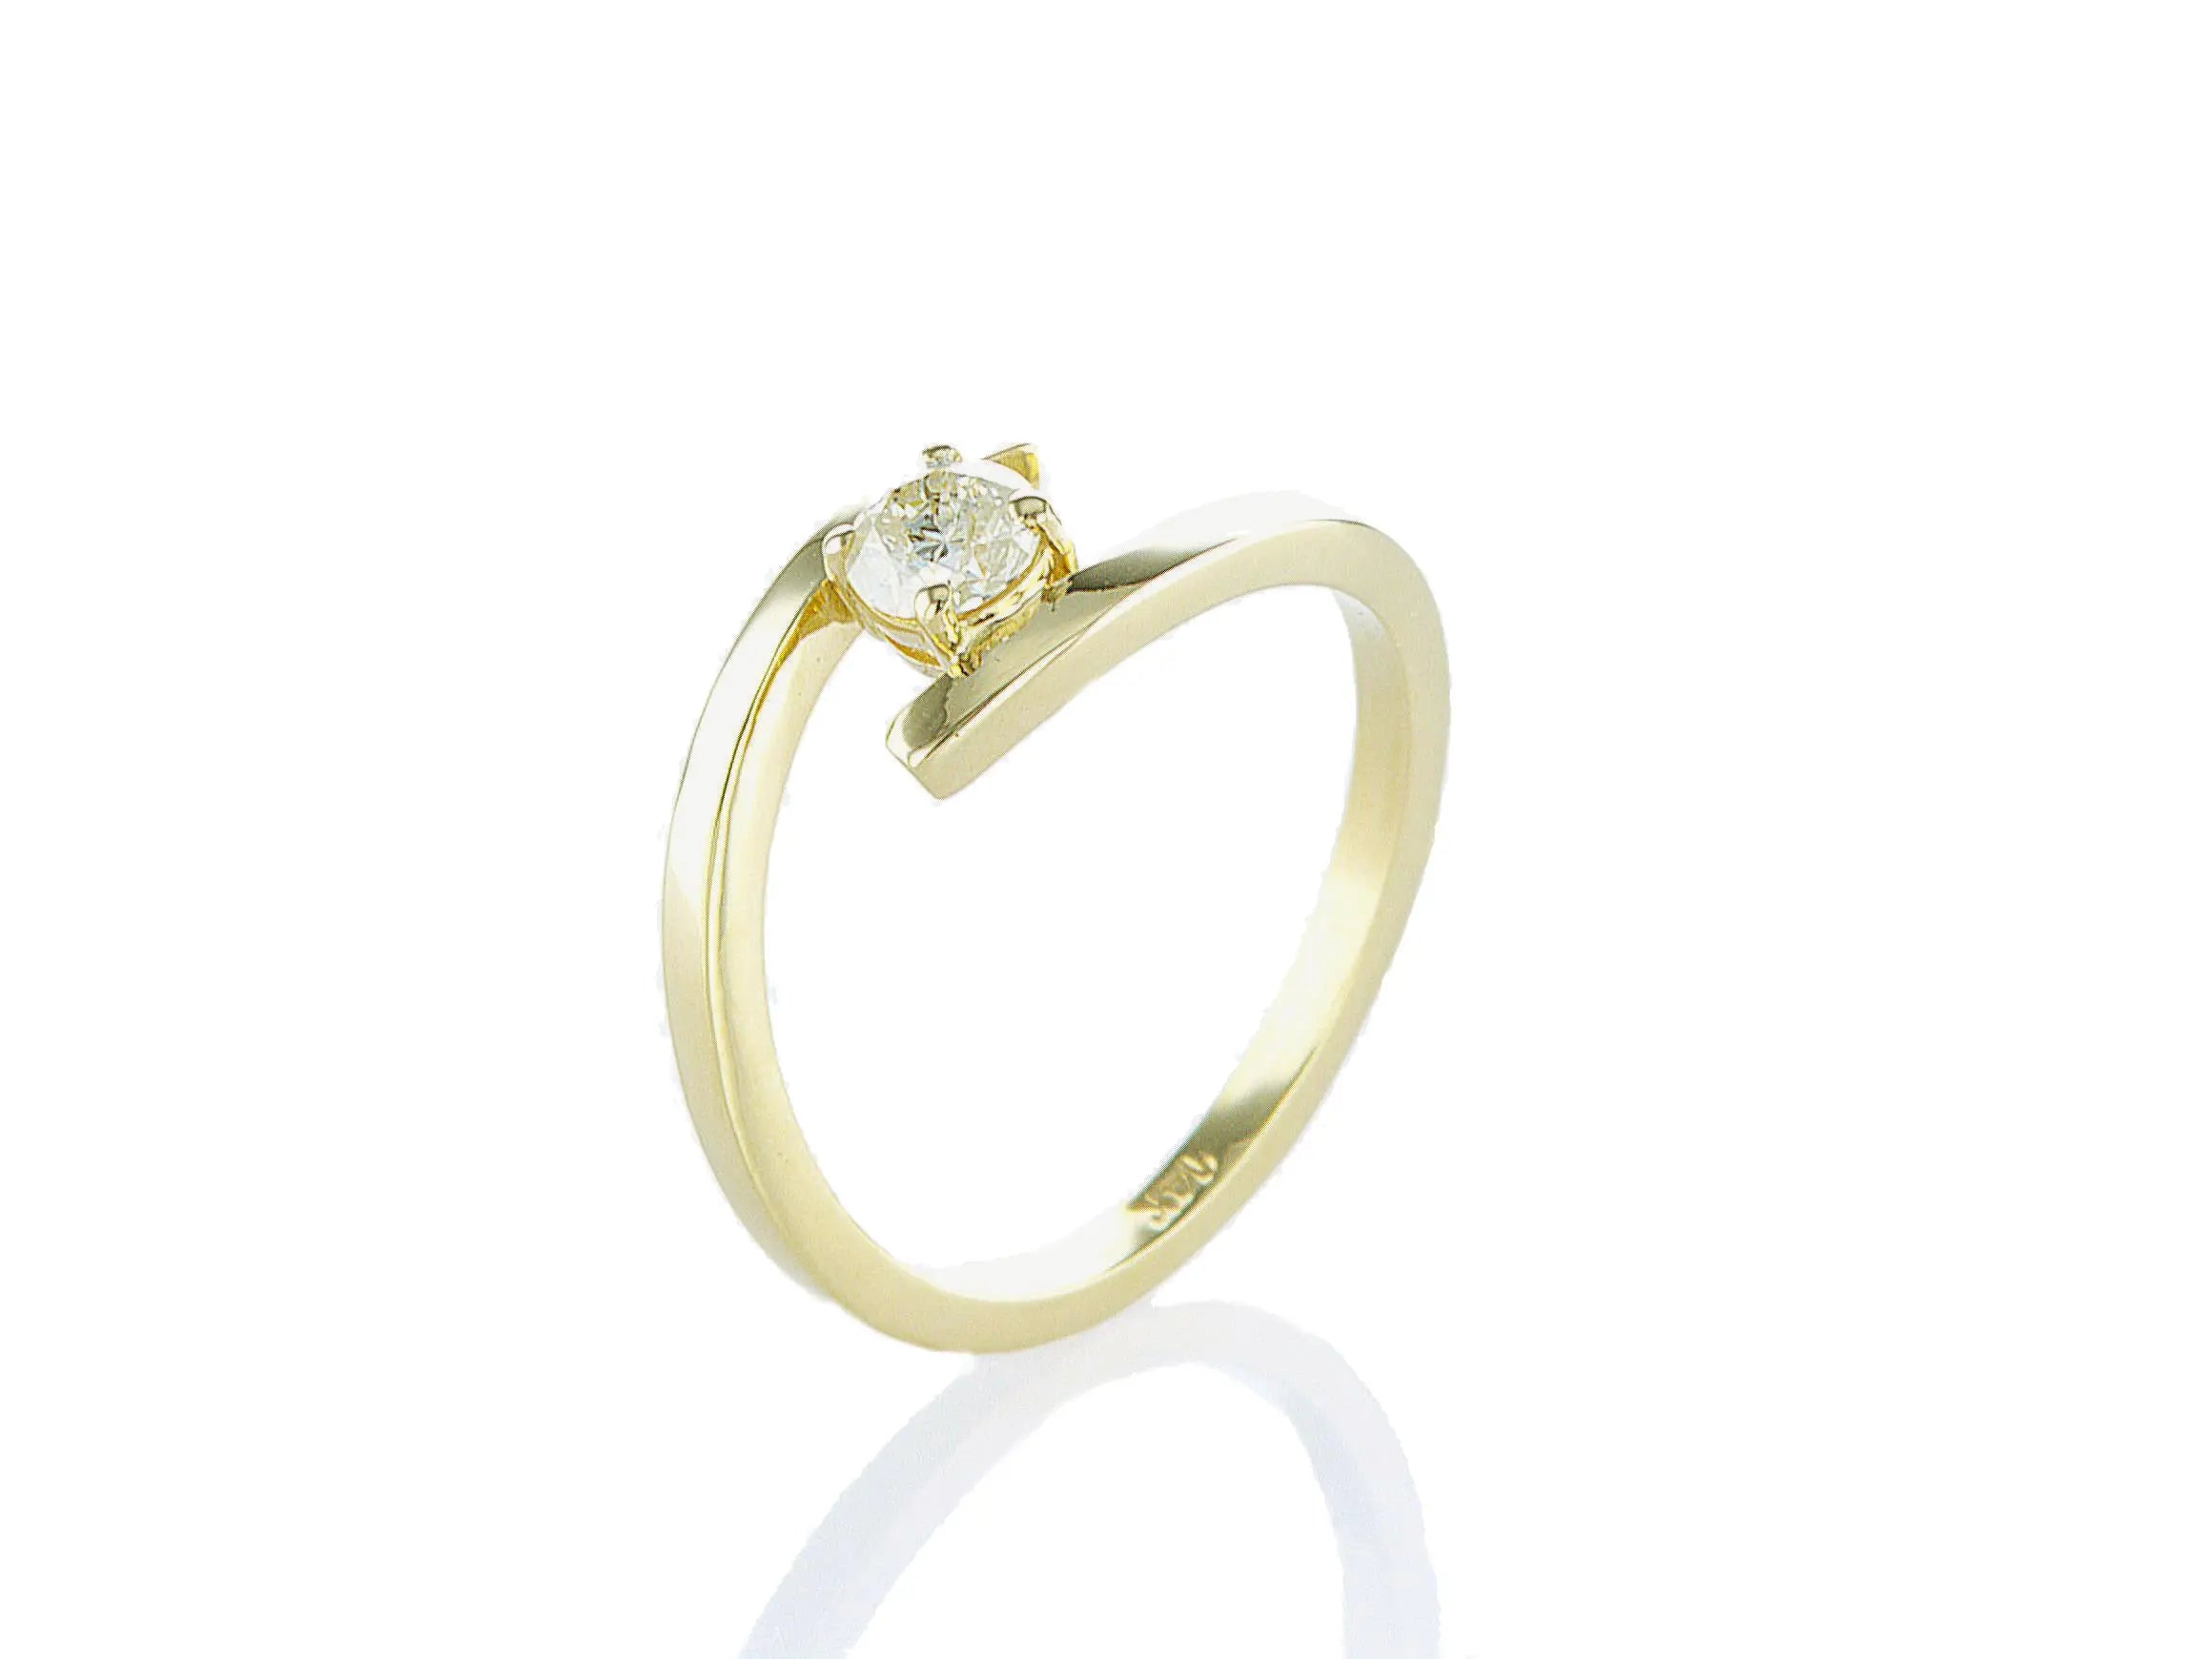 טבעת אירוסין דבש מרשימה, המכילה יהלום טבעי עגול מרכזי במשקל 0.26 קראט. הטבעת הזו מסמלת את השניים שהופכים לאחד, ומשלבת את היוקרה והברק של טבעת יהלומים עם האלגנטיות הנצחית, ומציעה יופי ואופנה שמתאימים לאירוע של פעם בחיים.